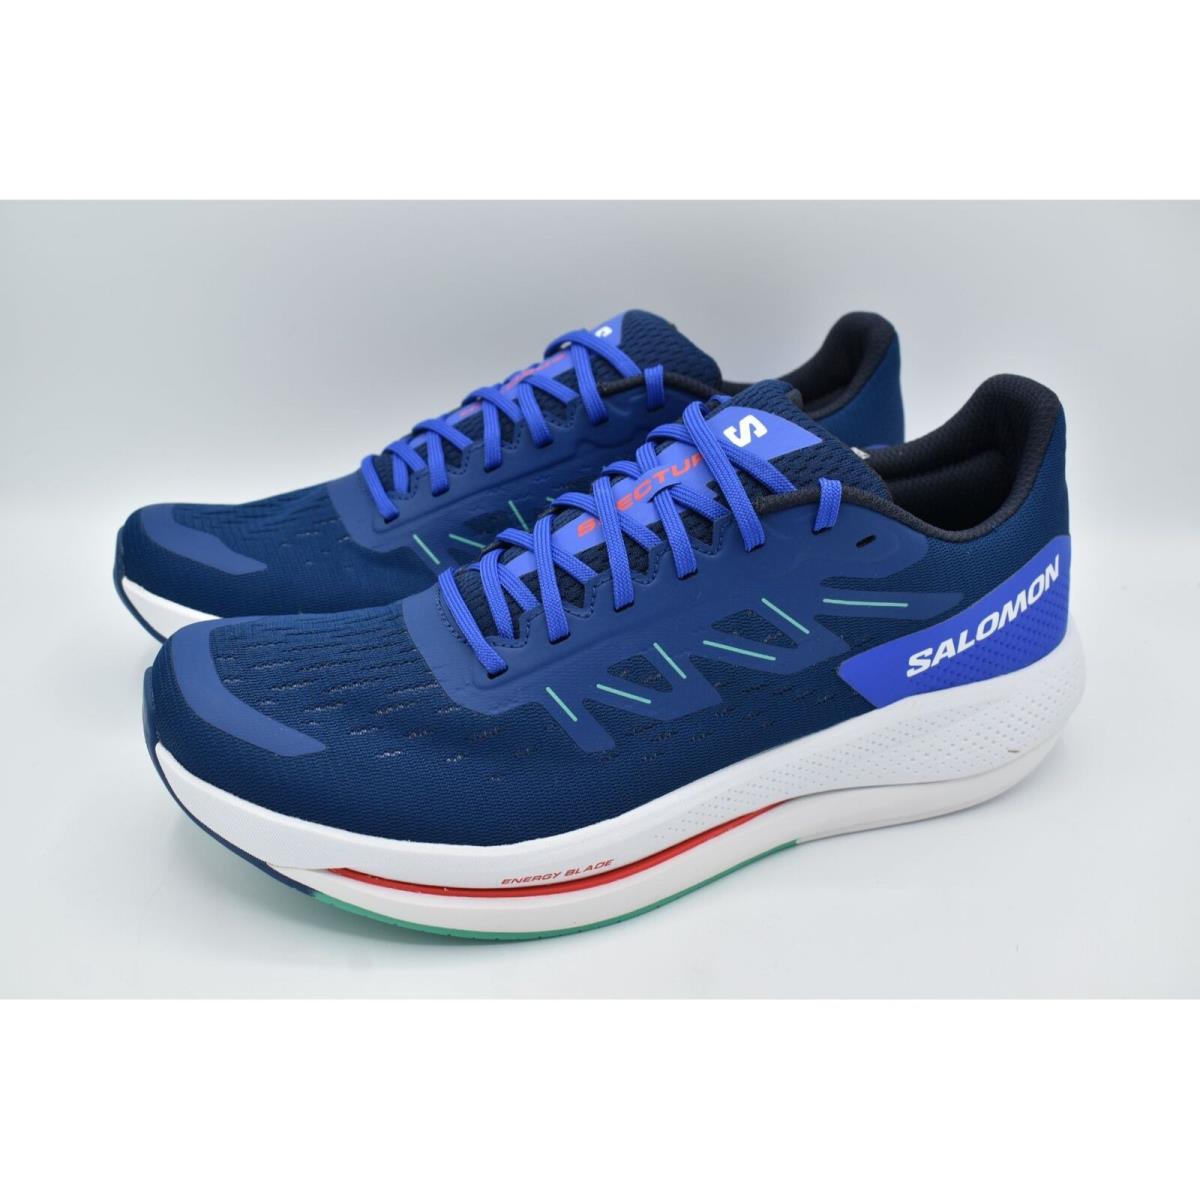 Salomon Mens Size 10.5 Spectur Estate Blue Mint Leaf Running Shoes Sneakers